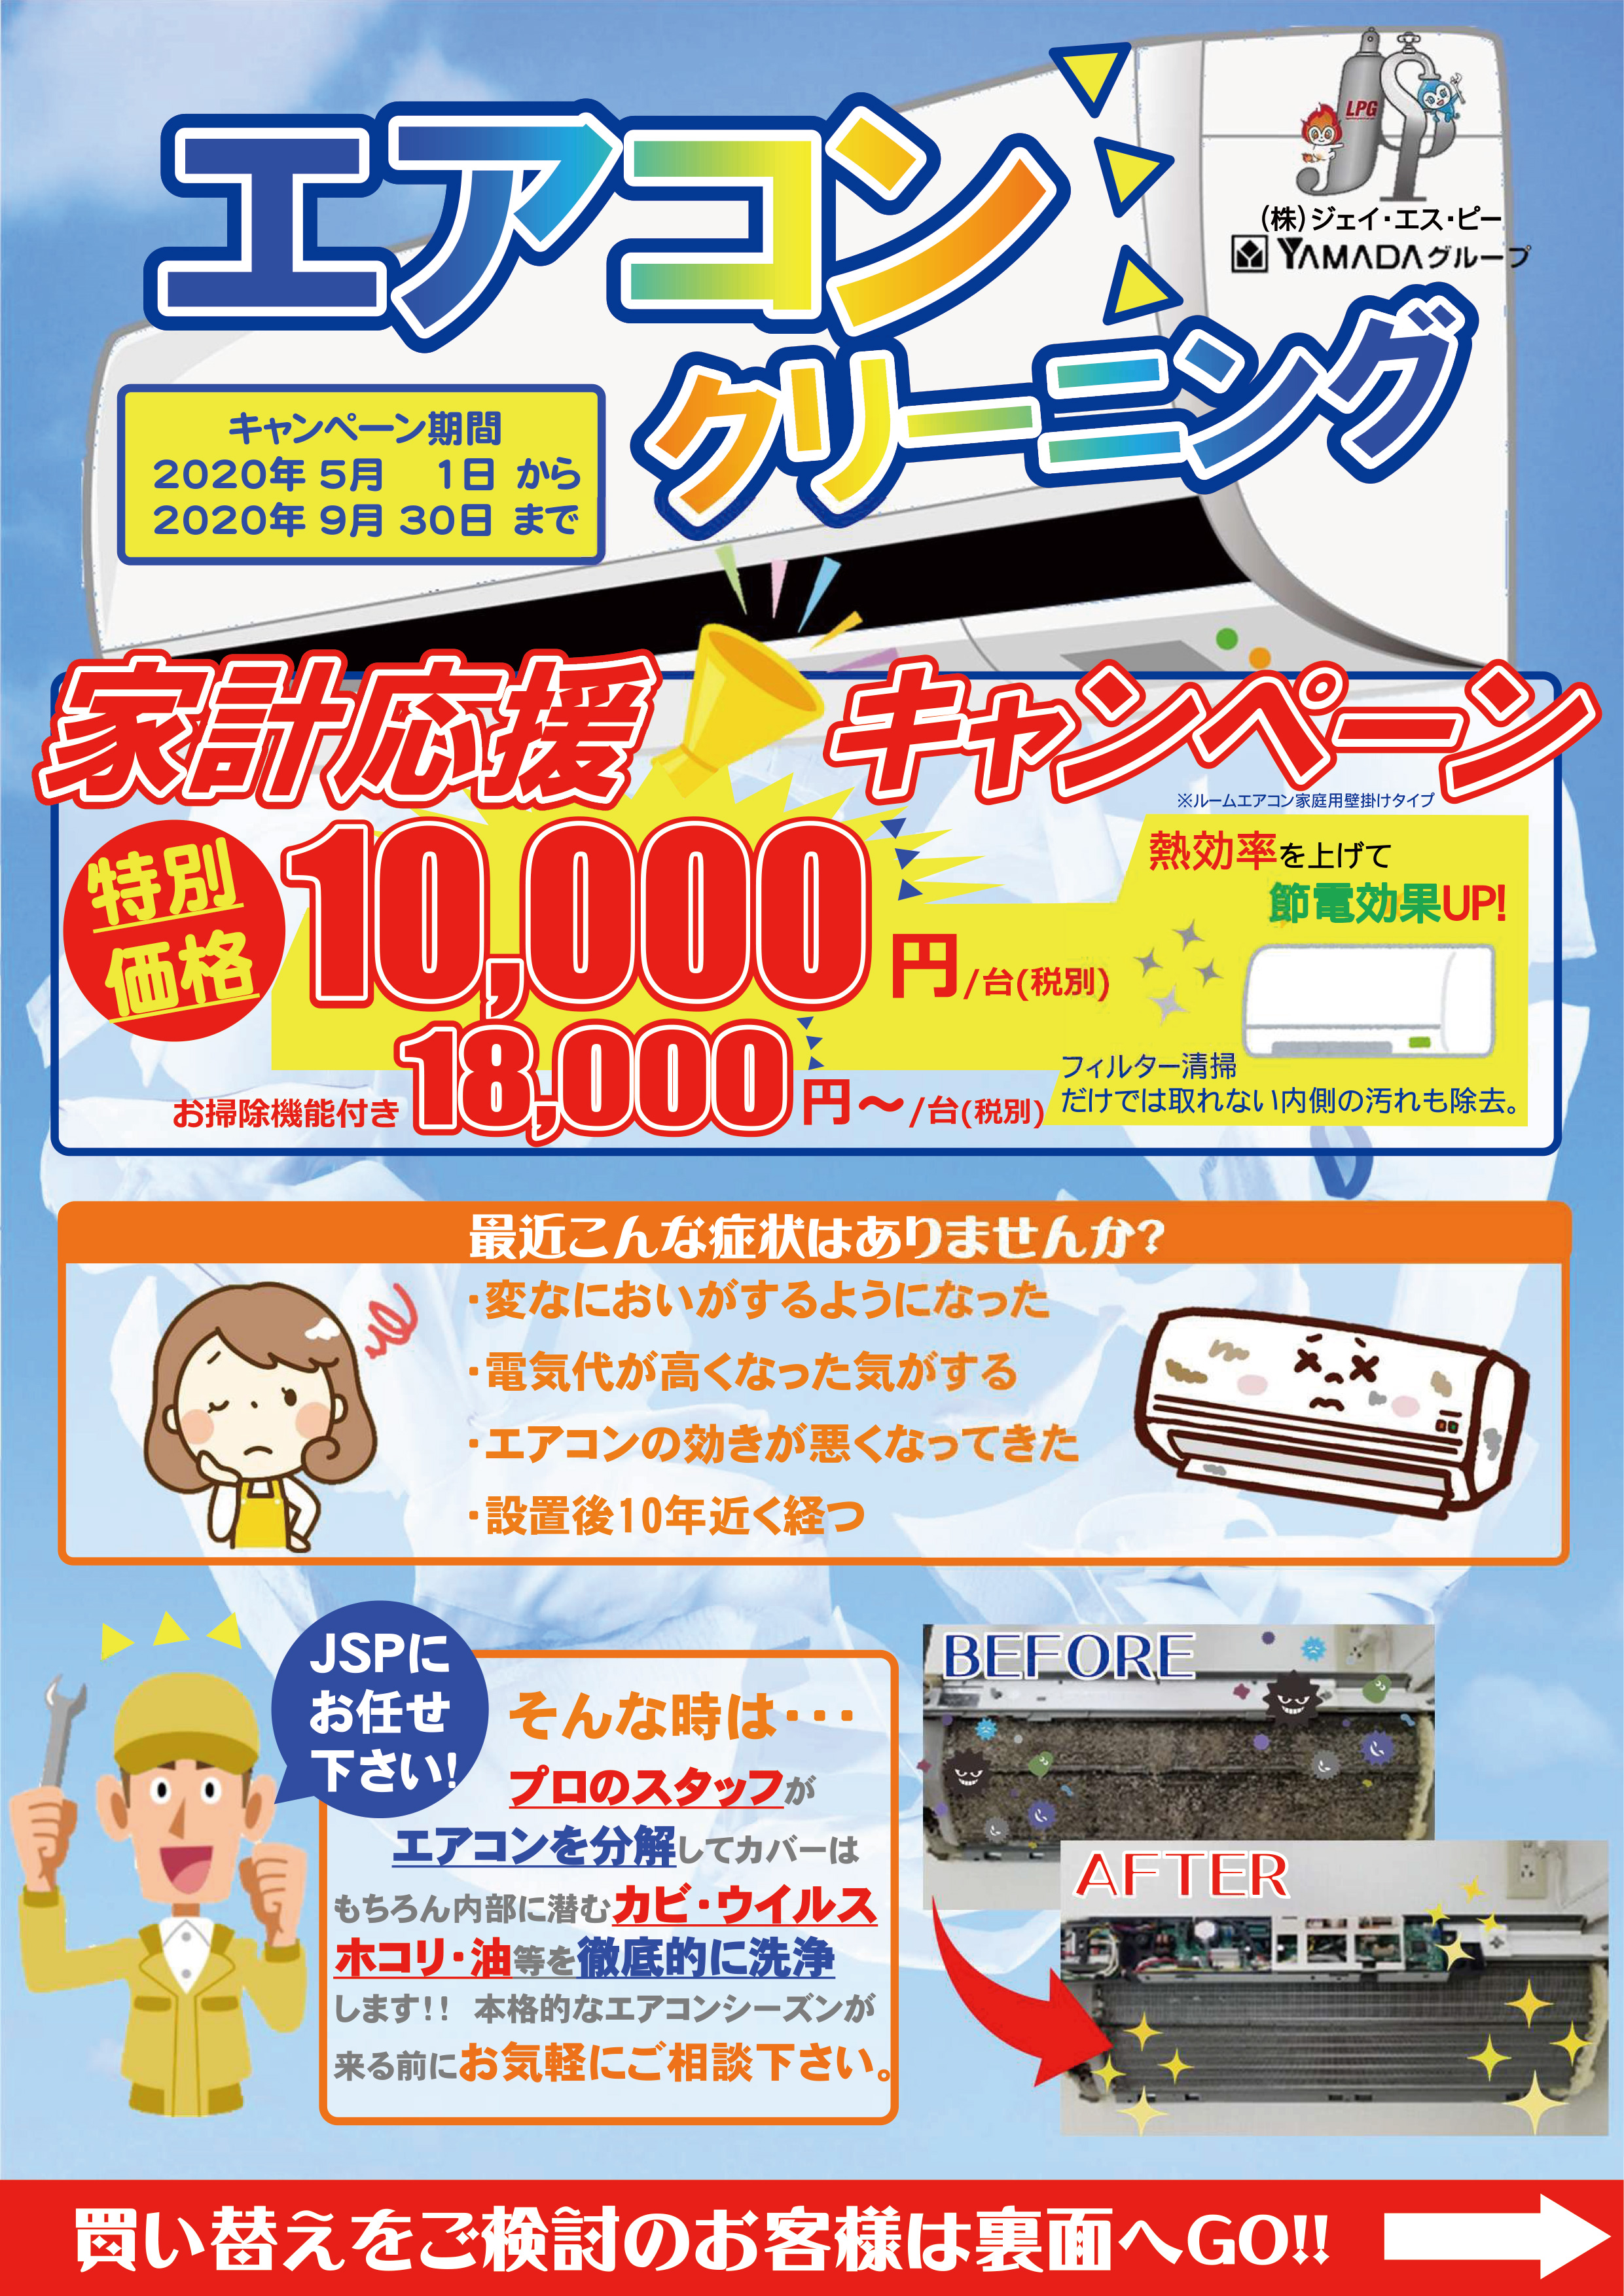 JSP春のポイントアップキャンペーン!!